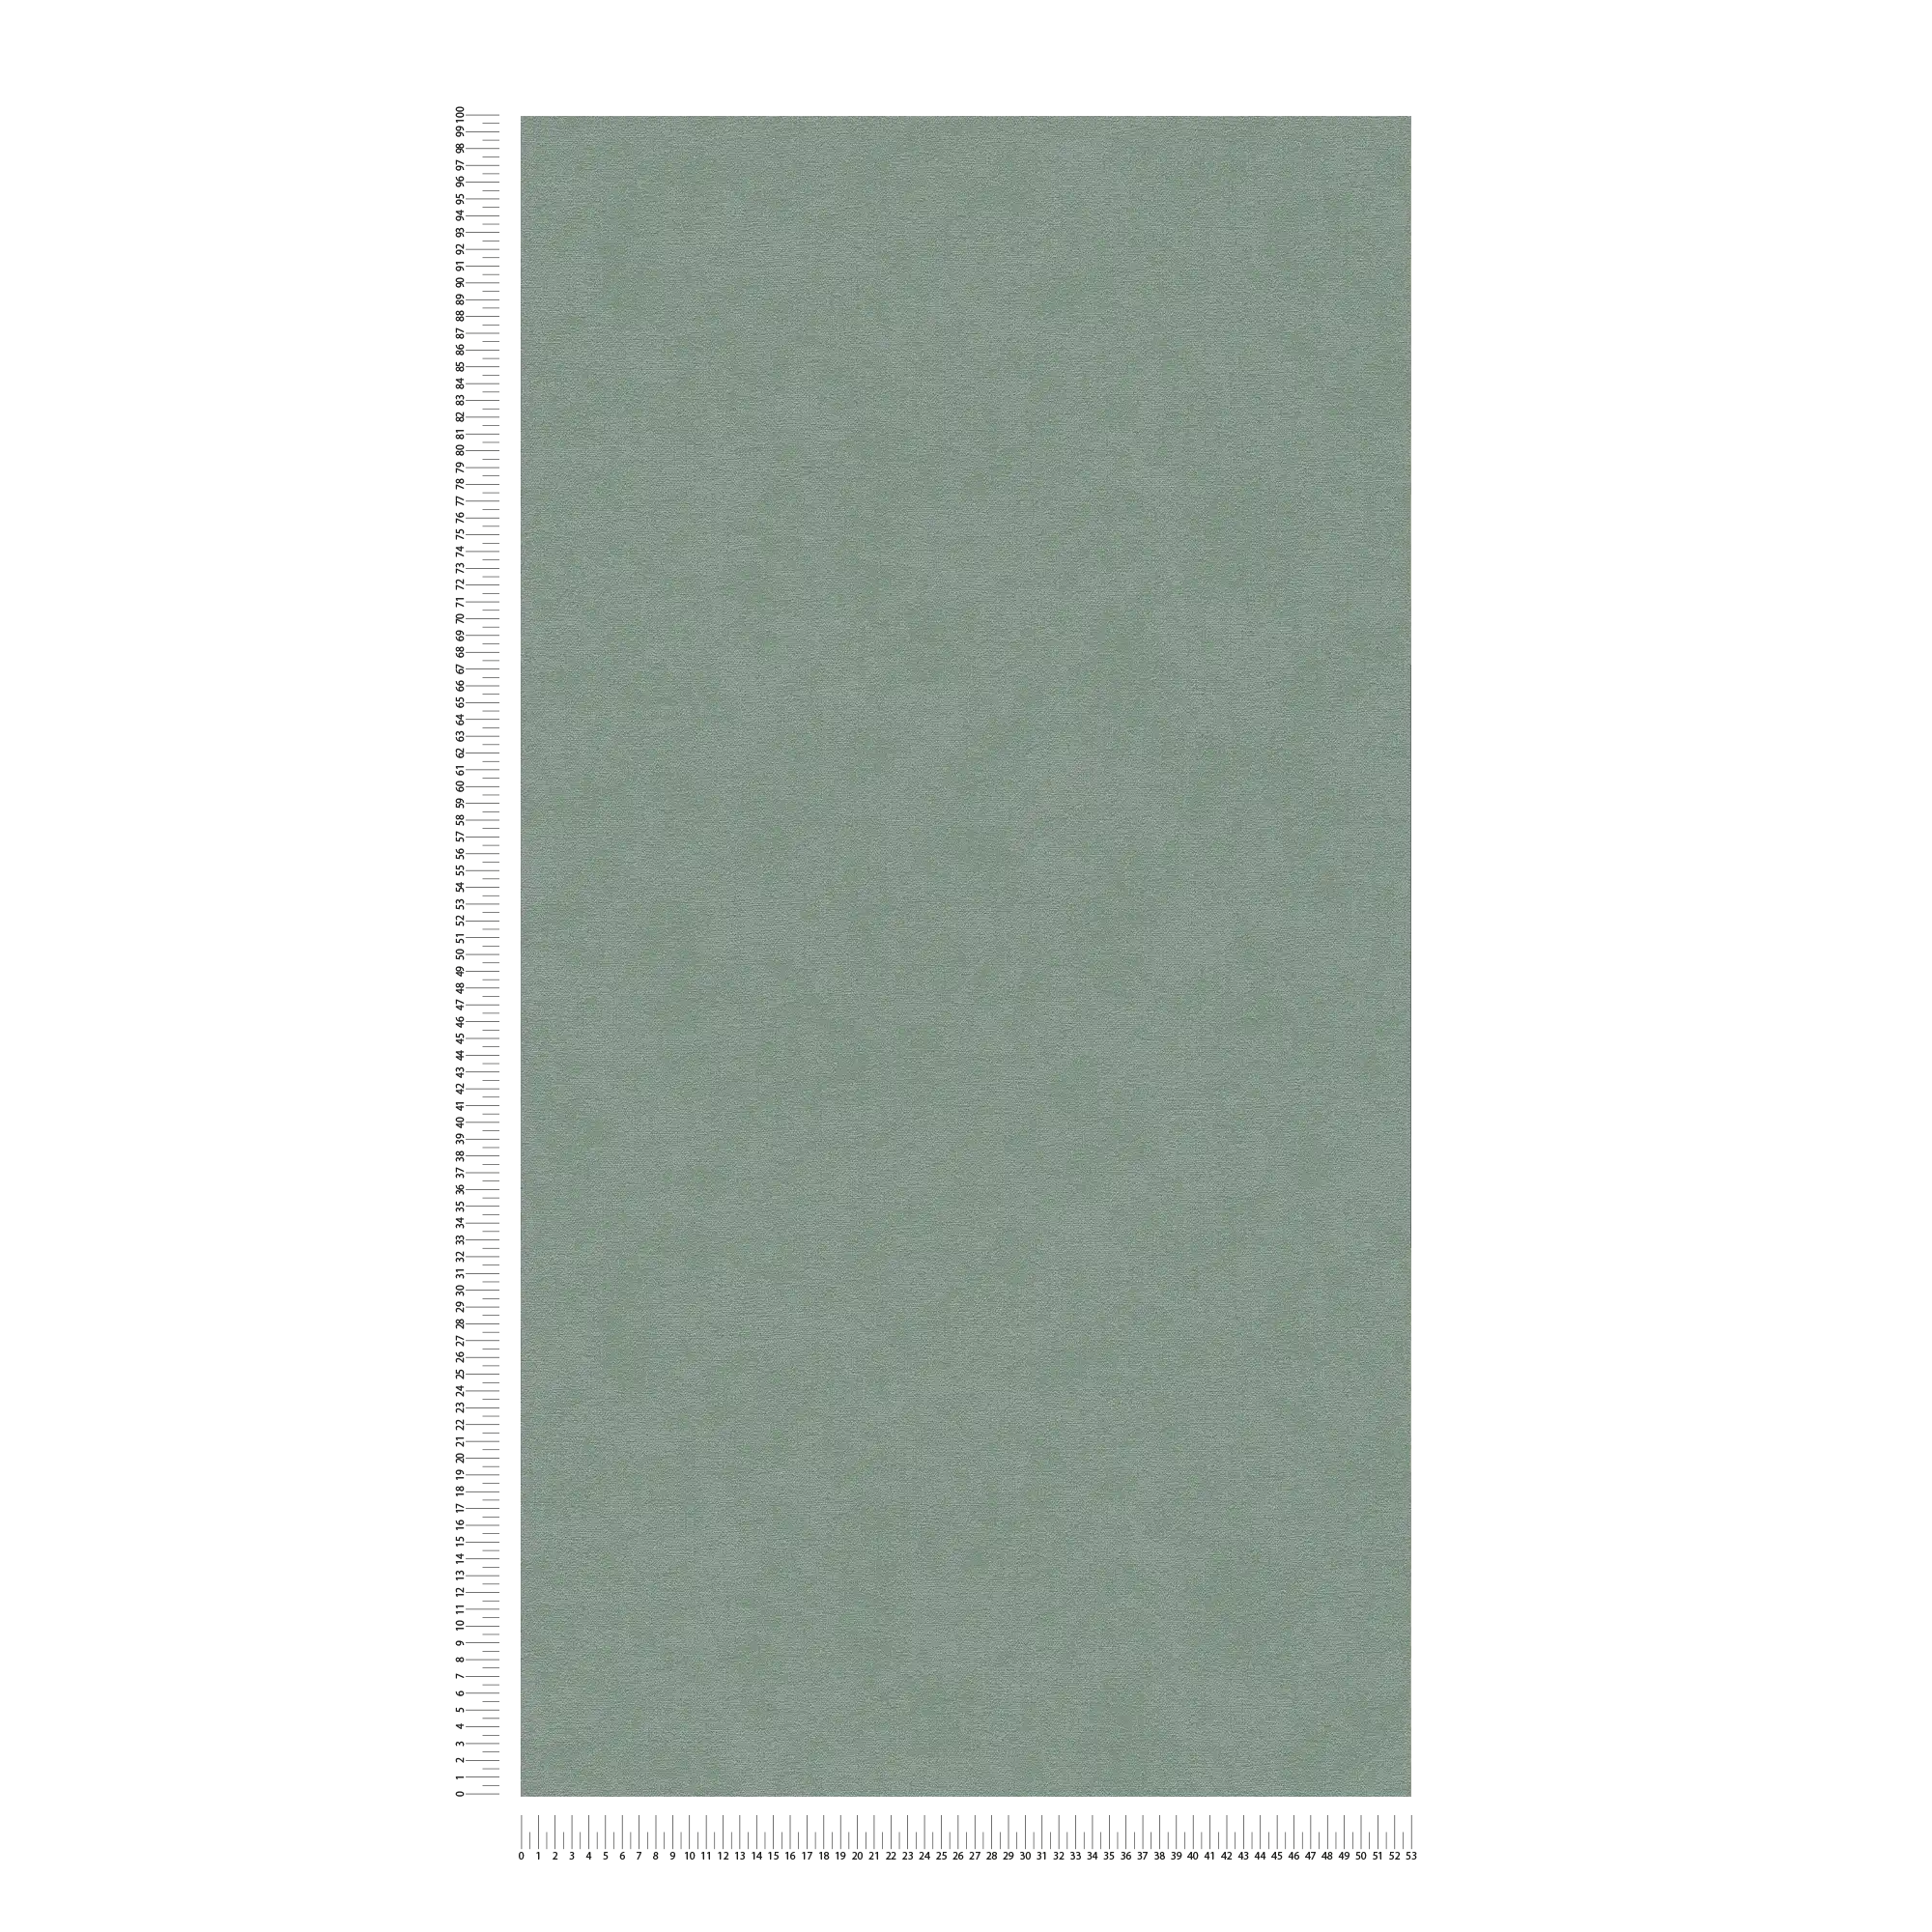             Papel pintado no tejido monocolor de textura suave - Verde
        